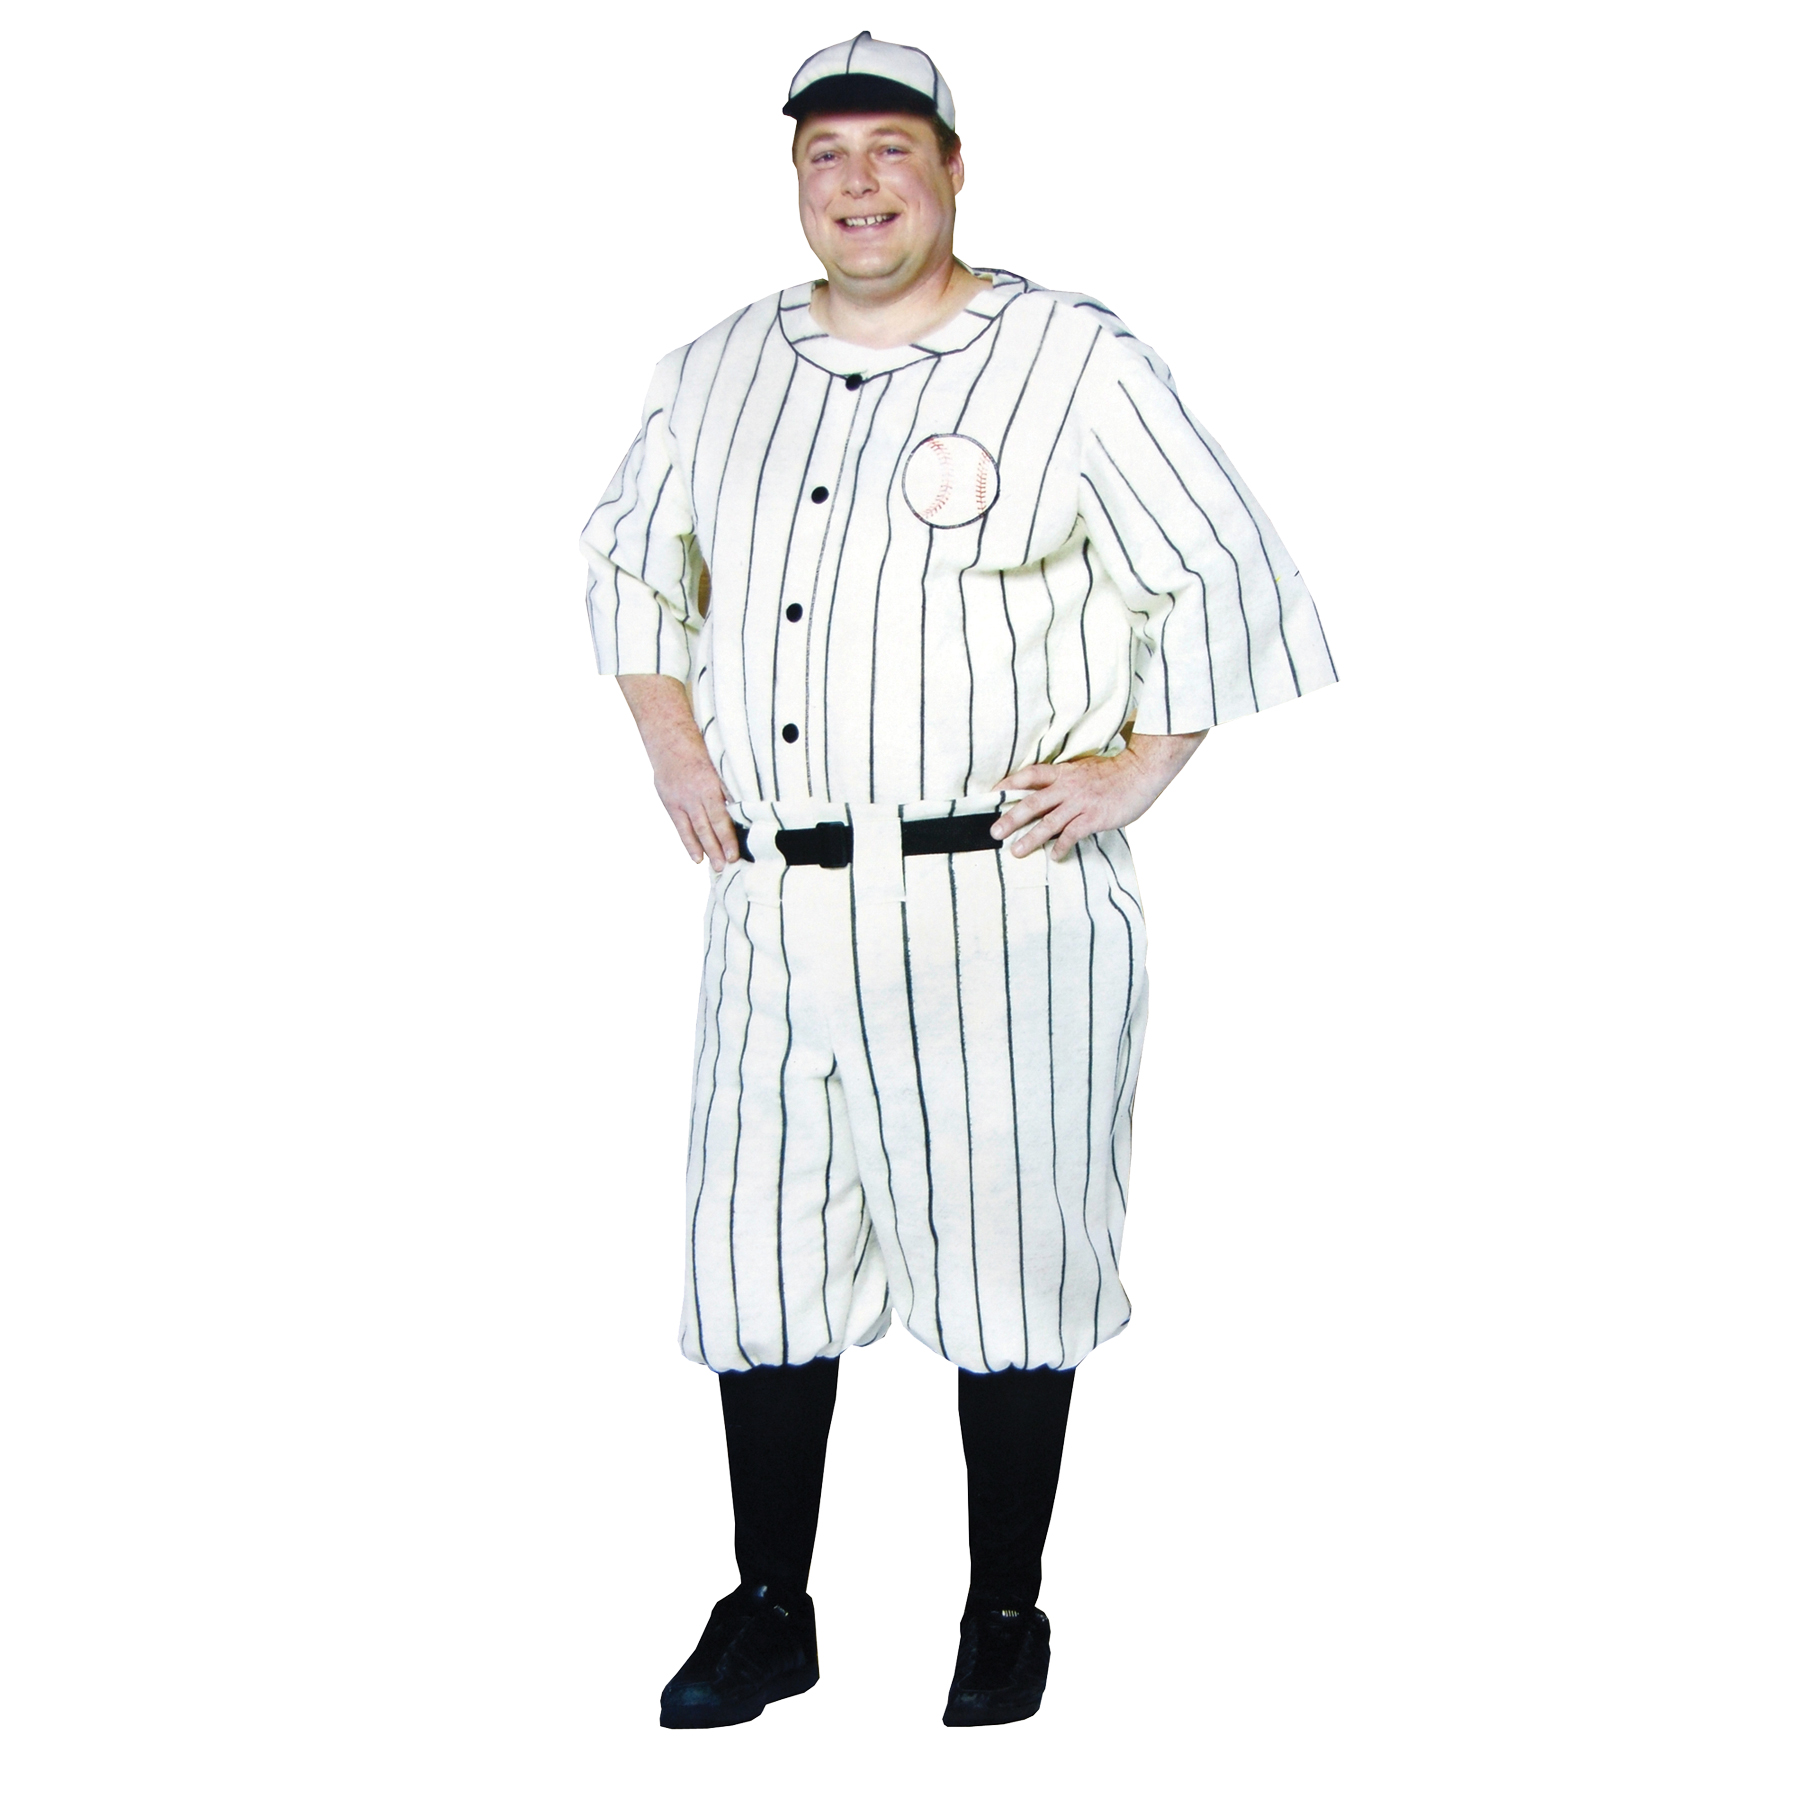 Men's Old Tyme Baseball Player Costume